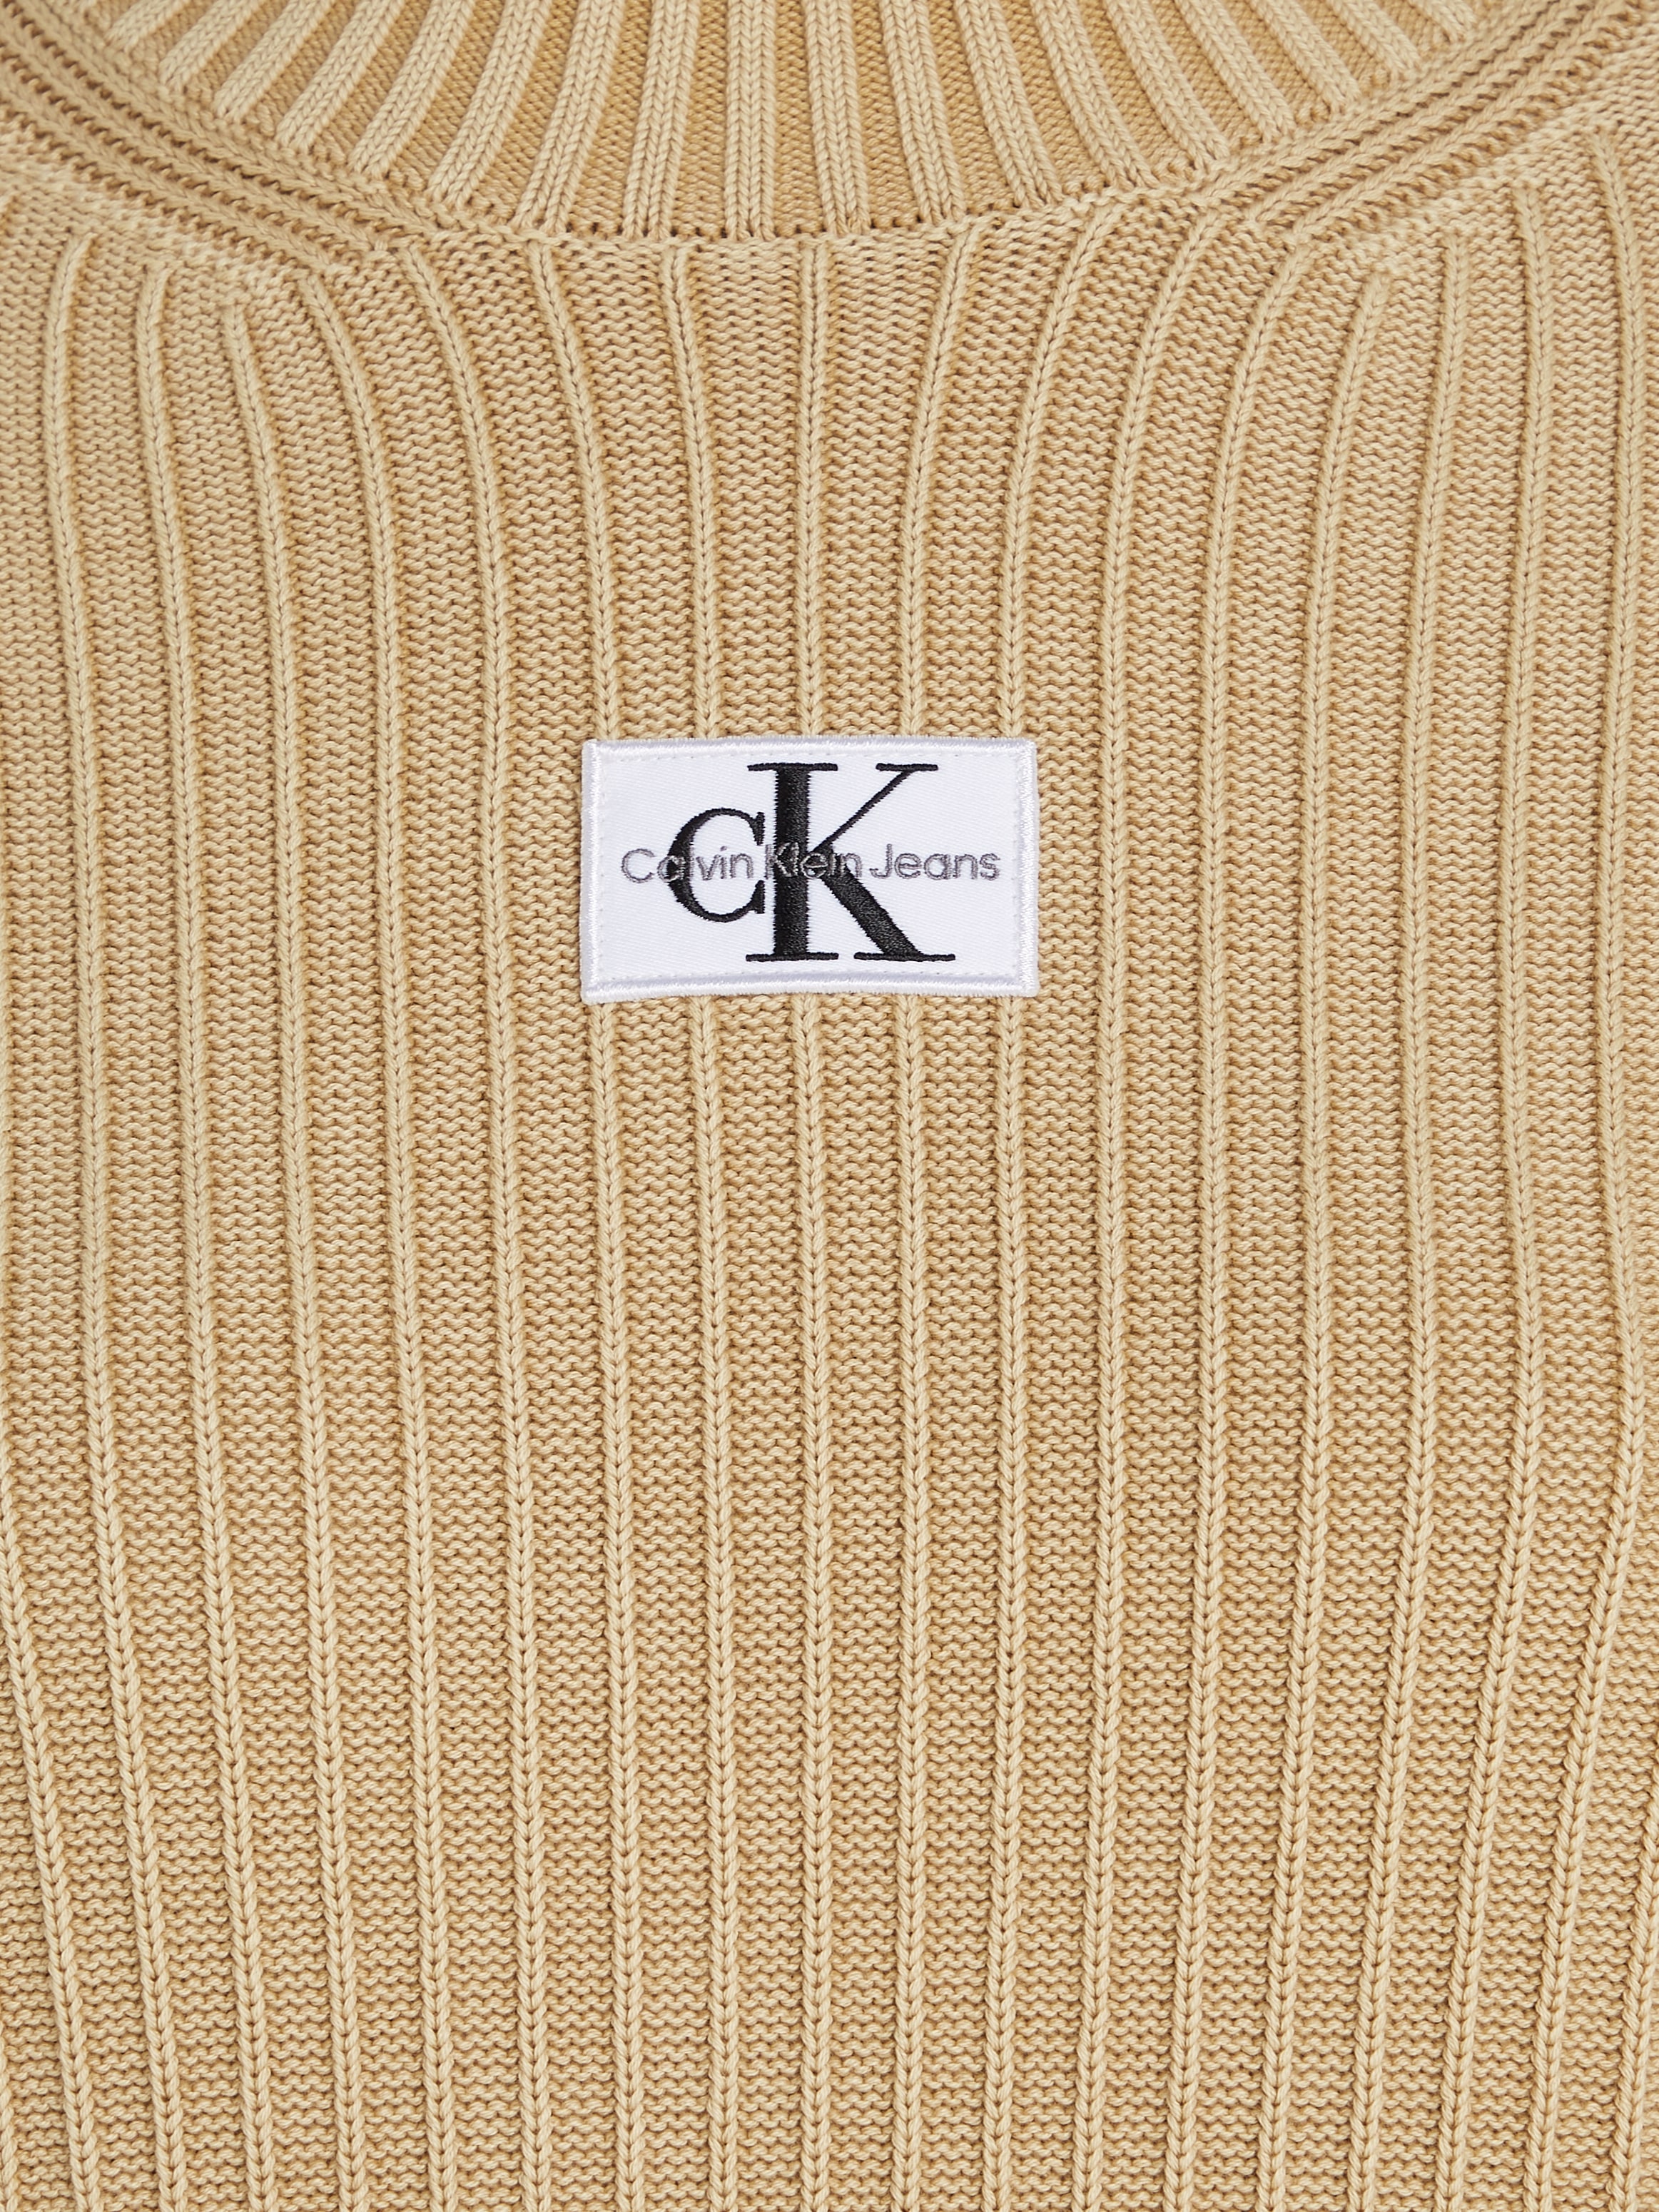 Calvin Klein bestellen bei SWEATER OTTO Jeans MONOLOGO online »WASHED DRESS« Strickkleid